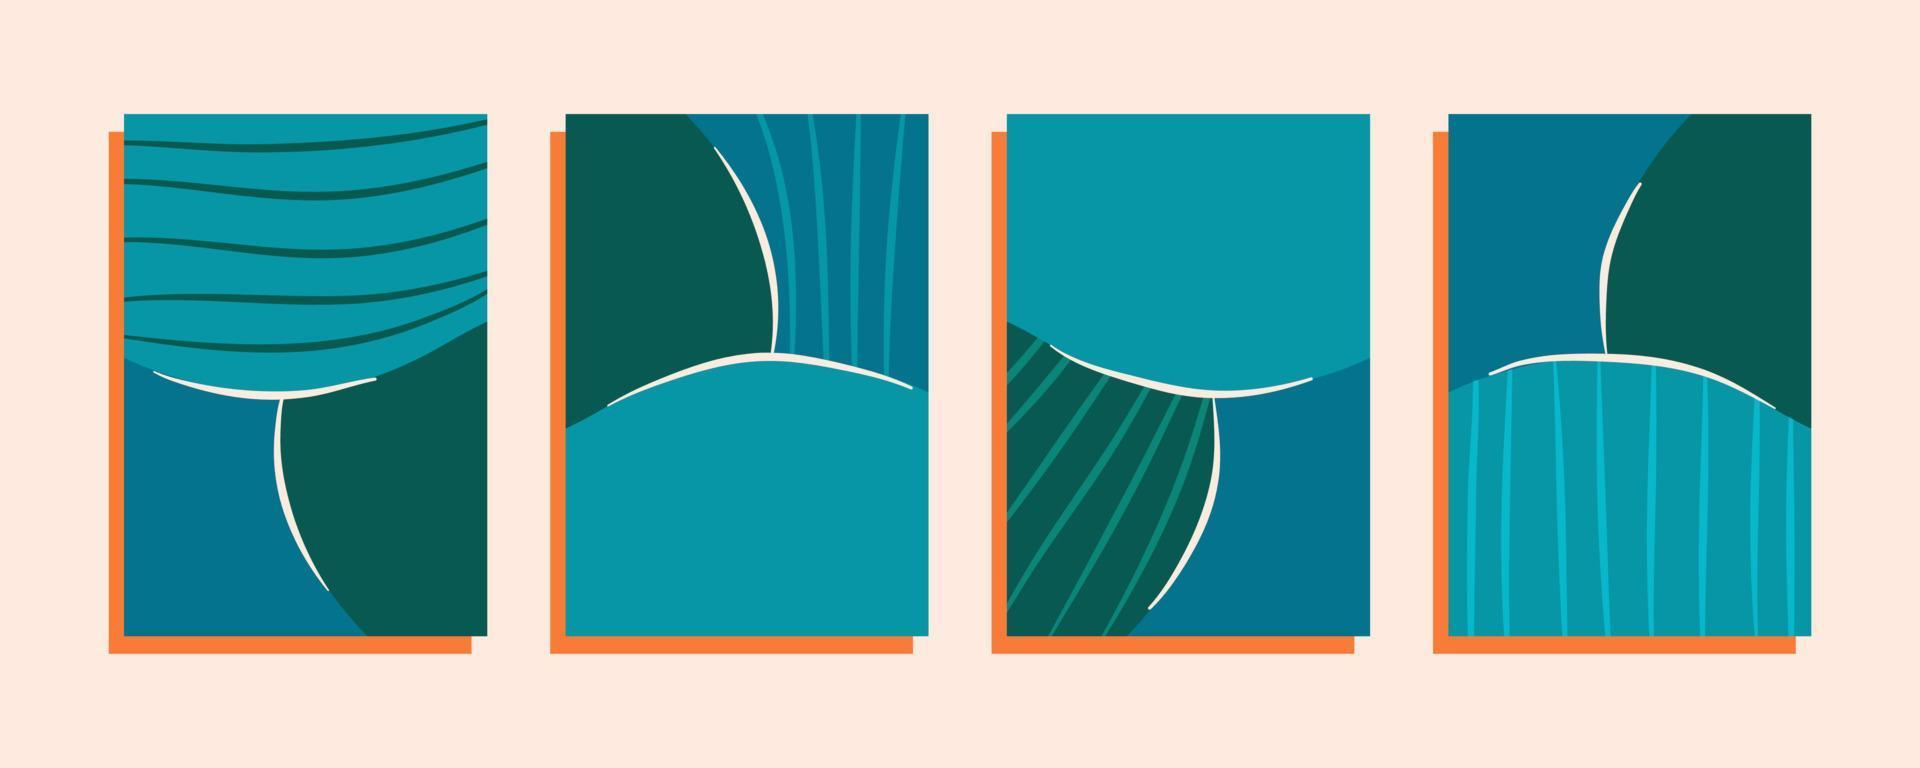 en uppsättning minimalistiska affischer med ränder. runda former och linjer på orange substrat. vektor illustration av abstrakta omslag och mallar.